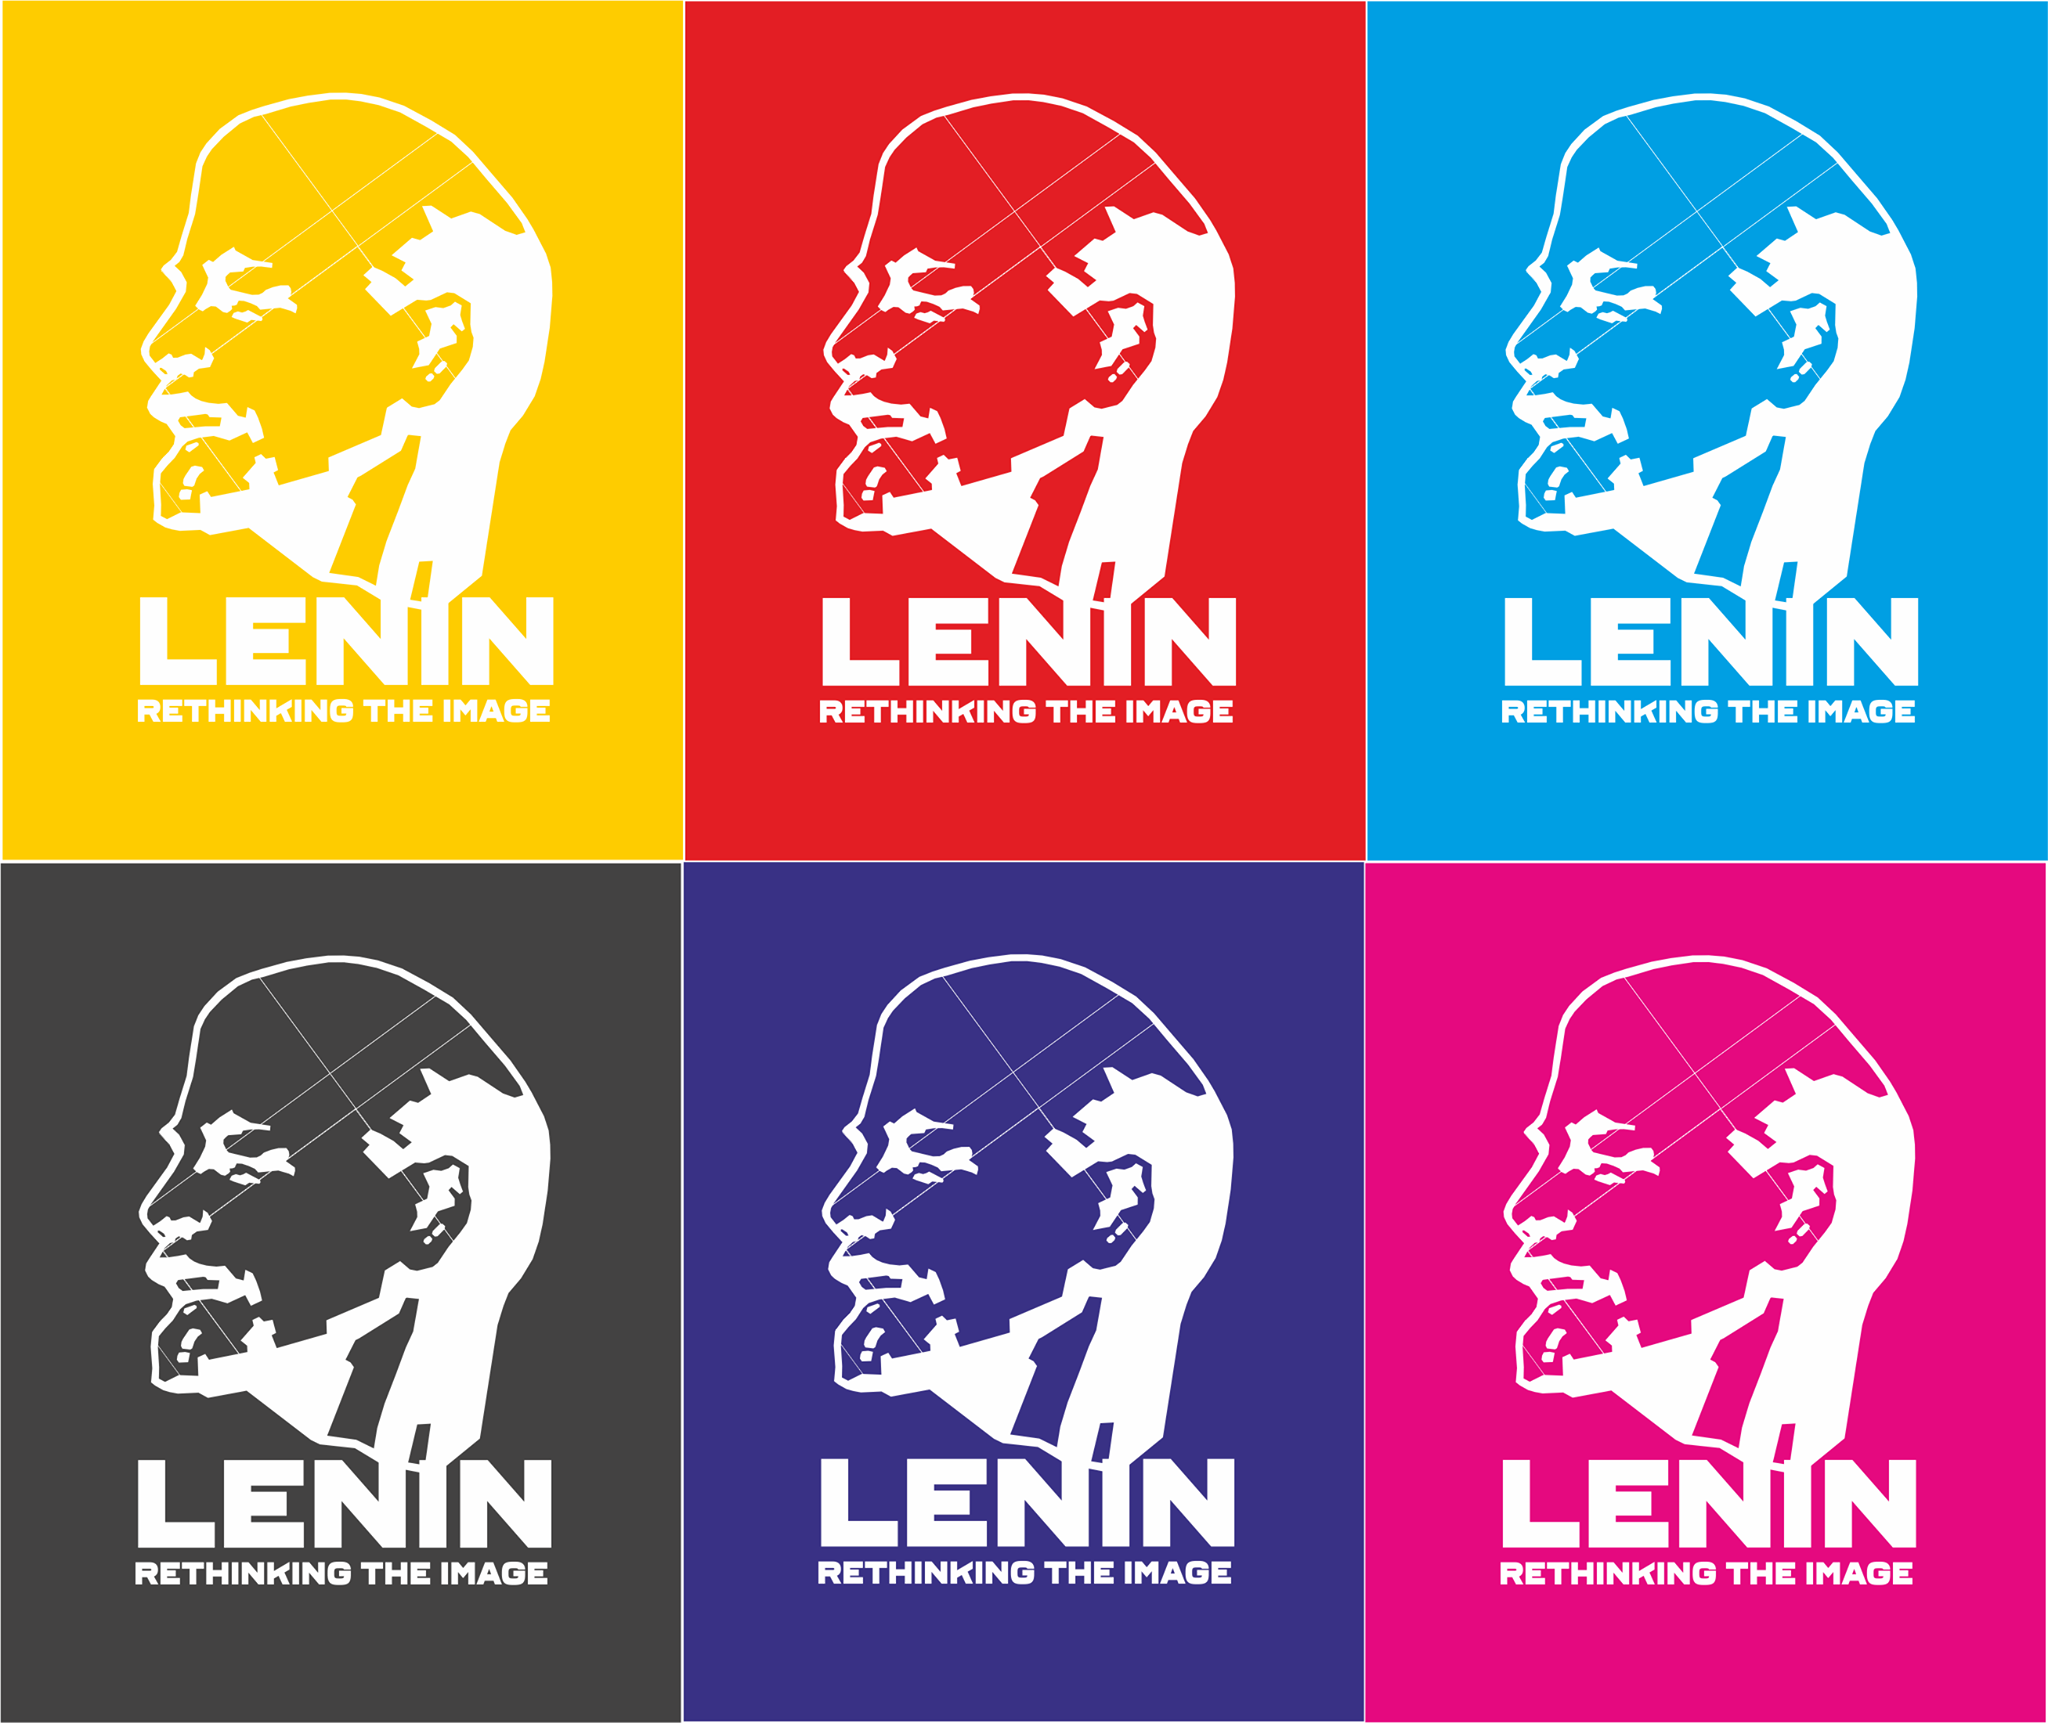 Международный конкурс медиа-арта «Ленин: переосмысление образа»